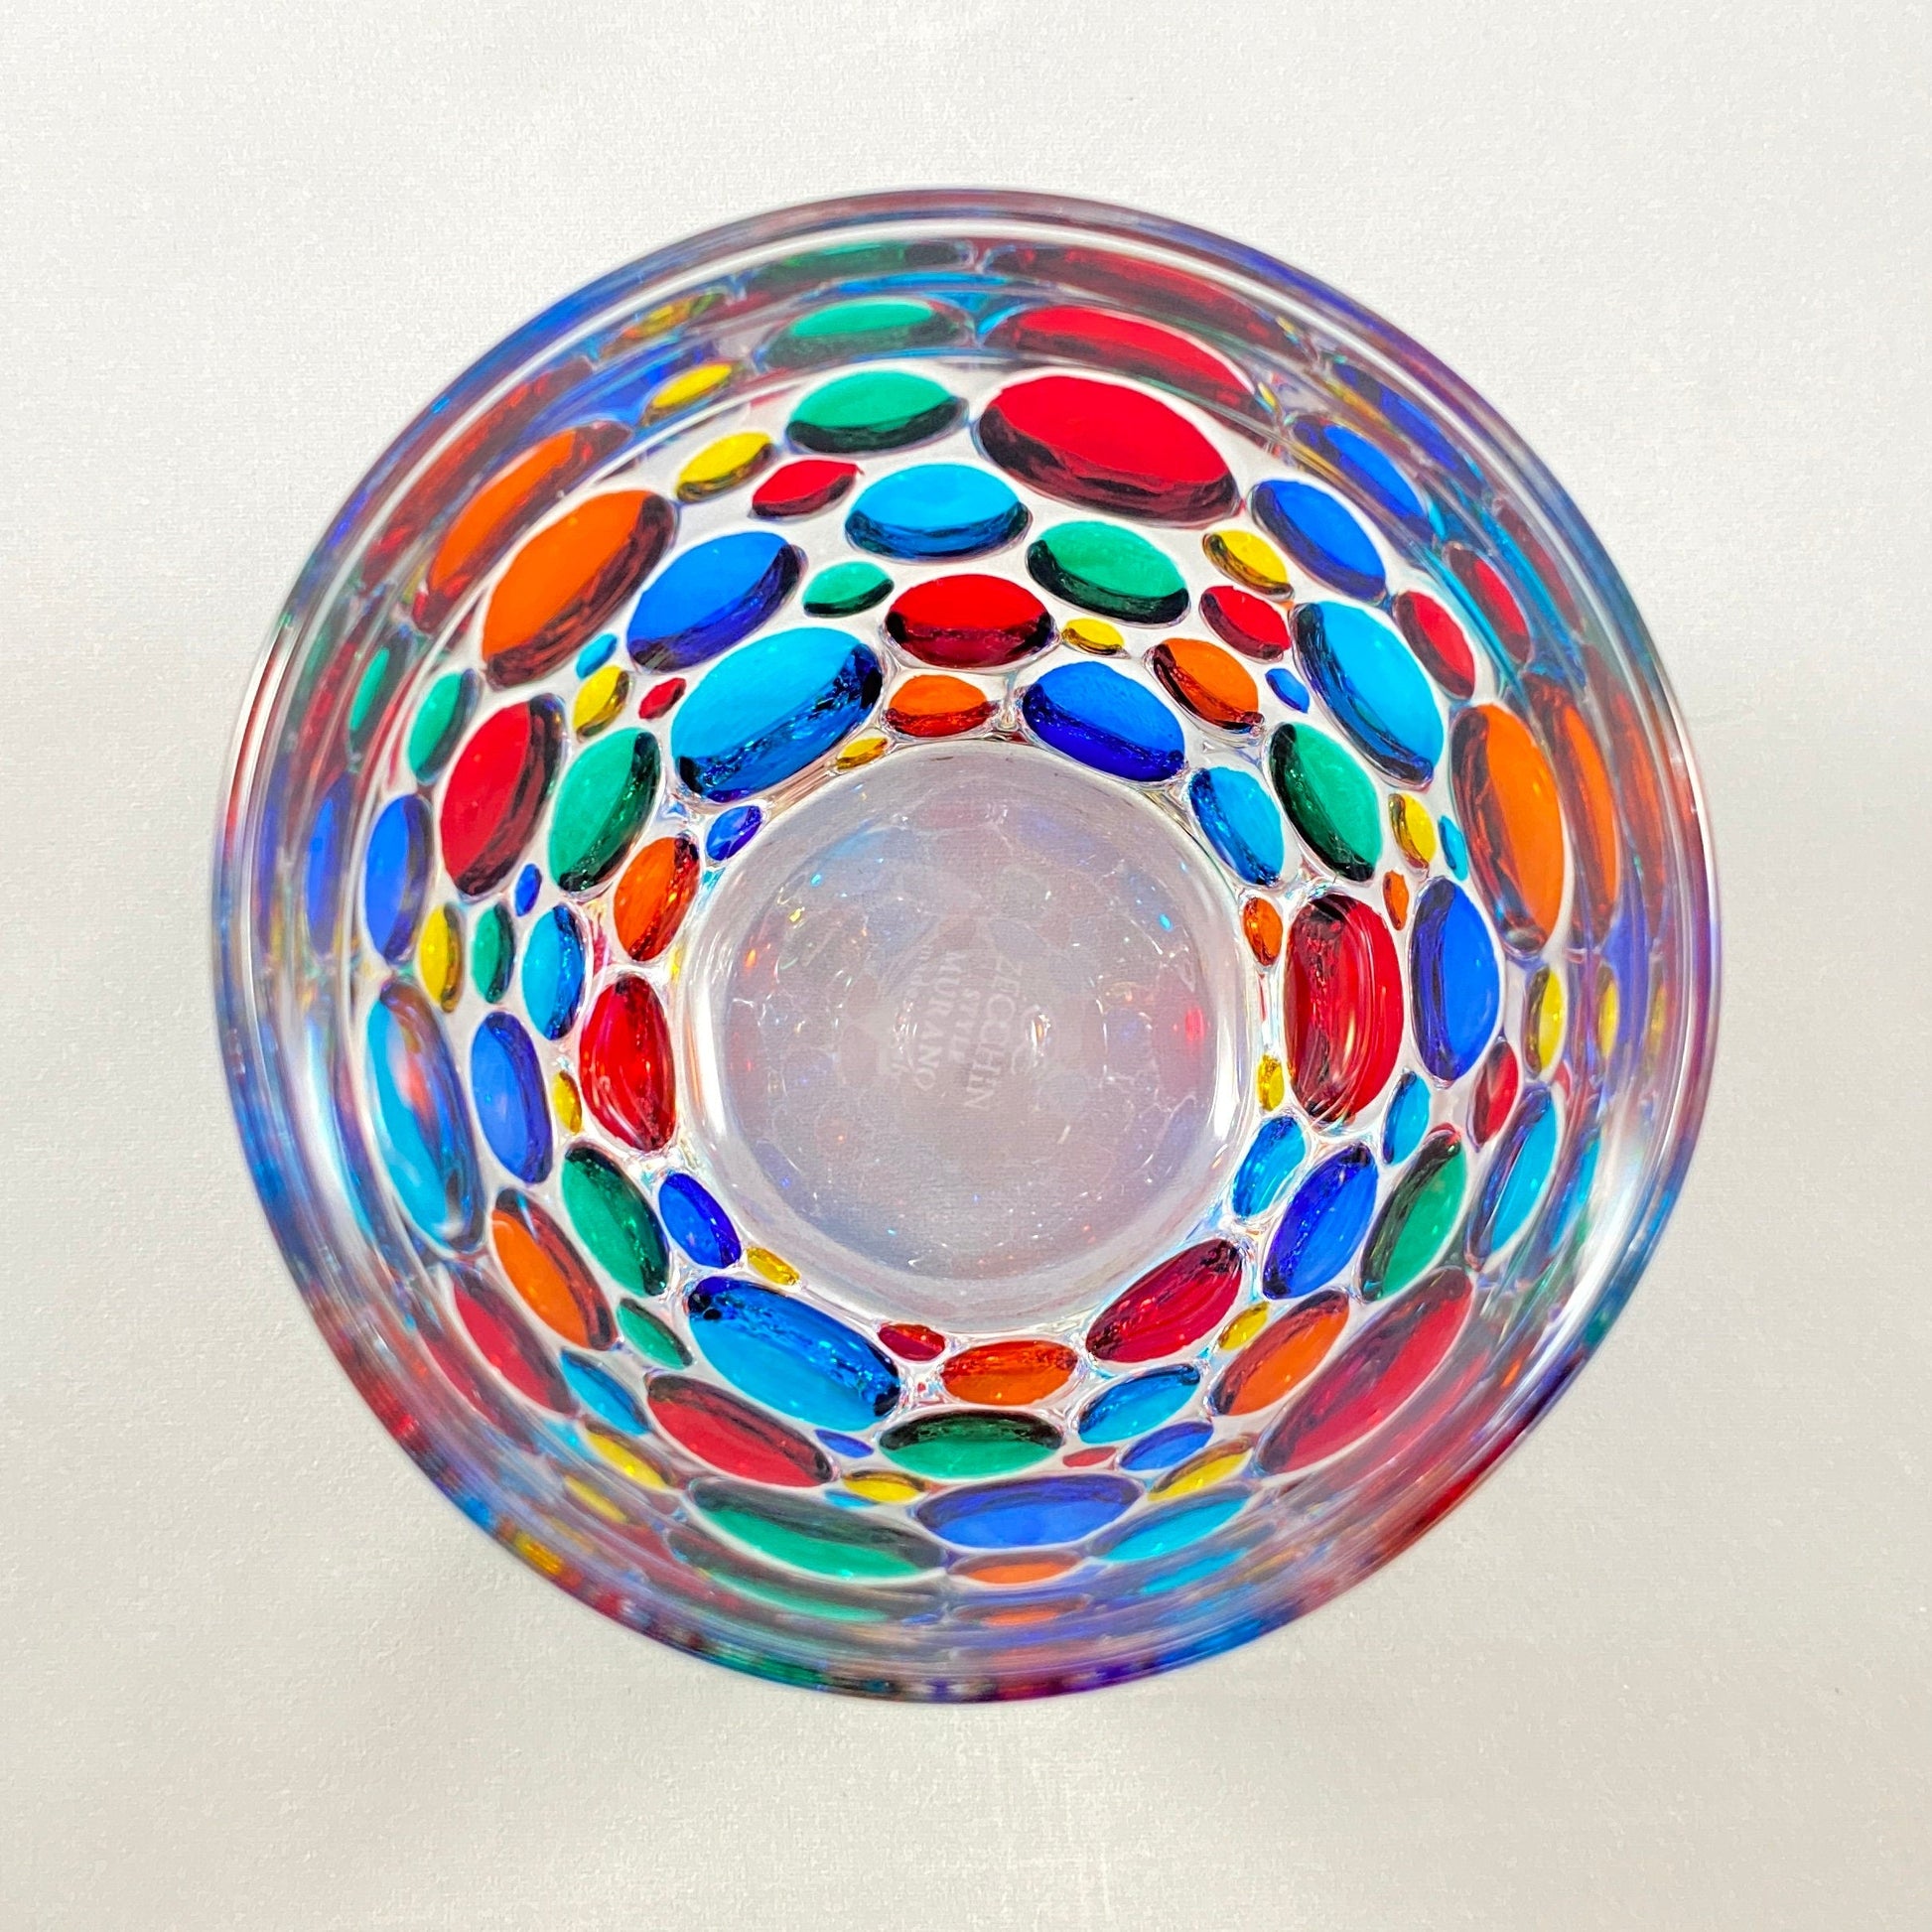 Venetian Glass Kaleidoscope Whiskey Glass - Handmade in Italy, Colorful Murano Glass